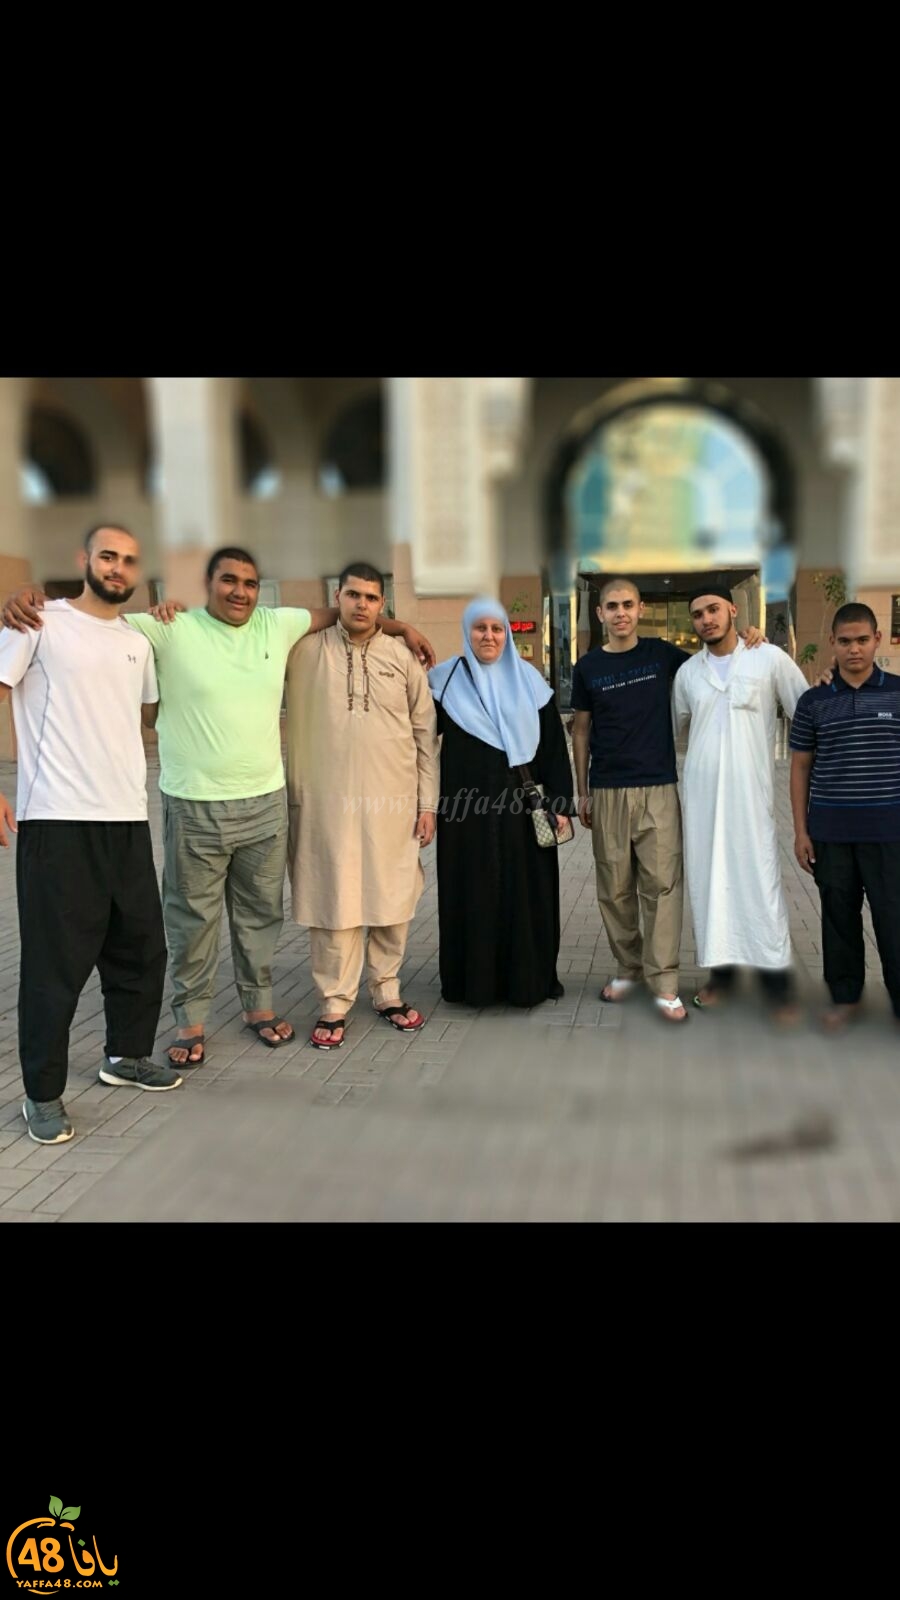 صور للمشاركين في مسابقة مزامير يافا اثناء تواجدهم في المدينة المنورة 